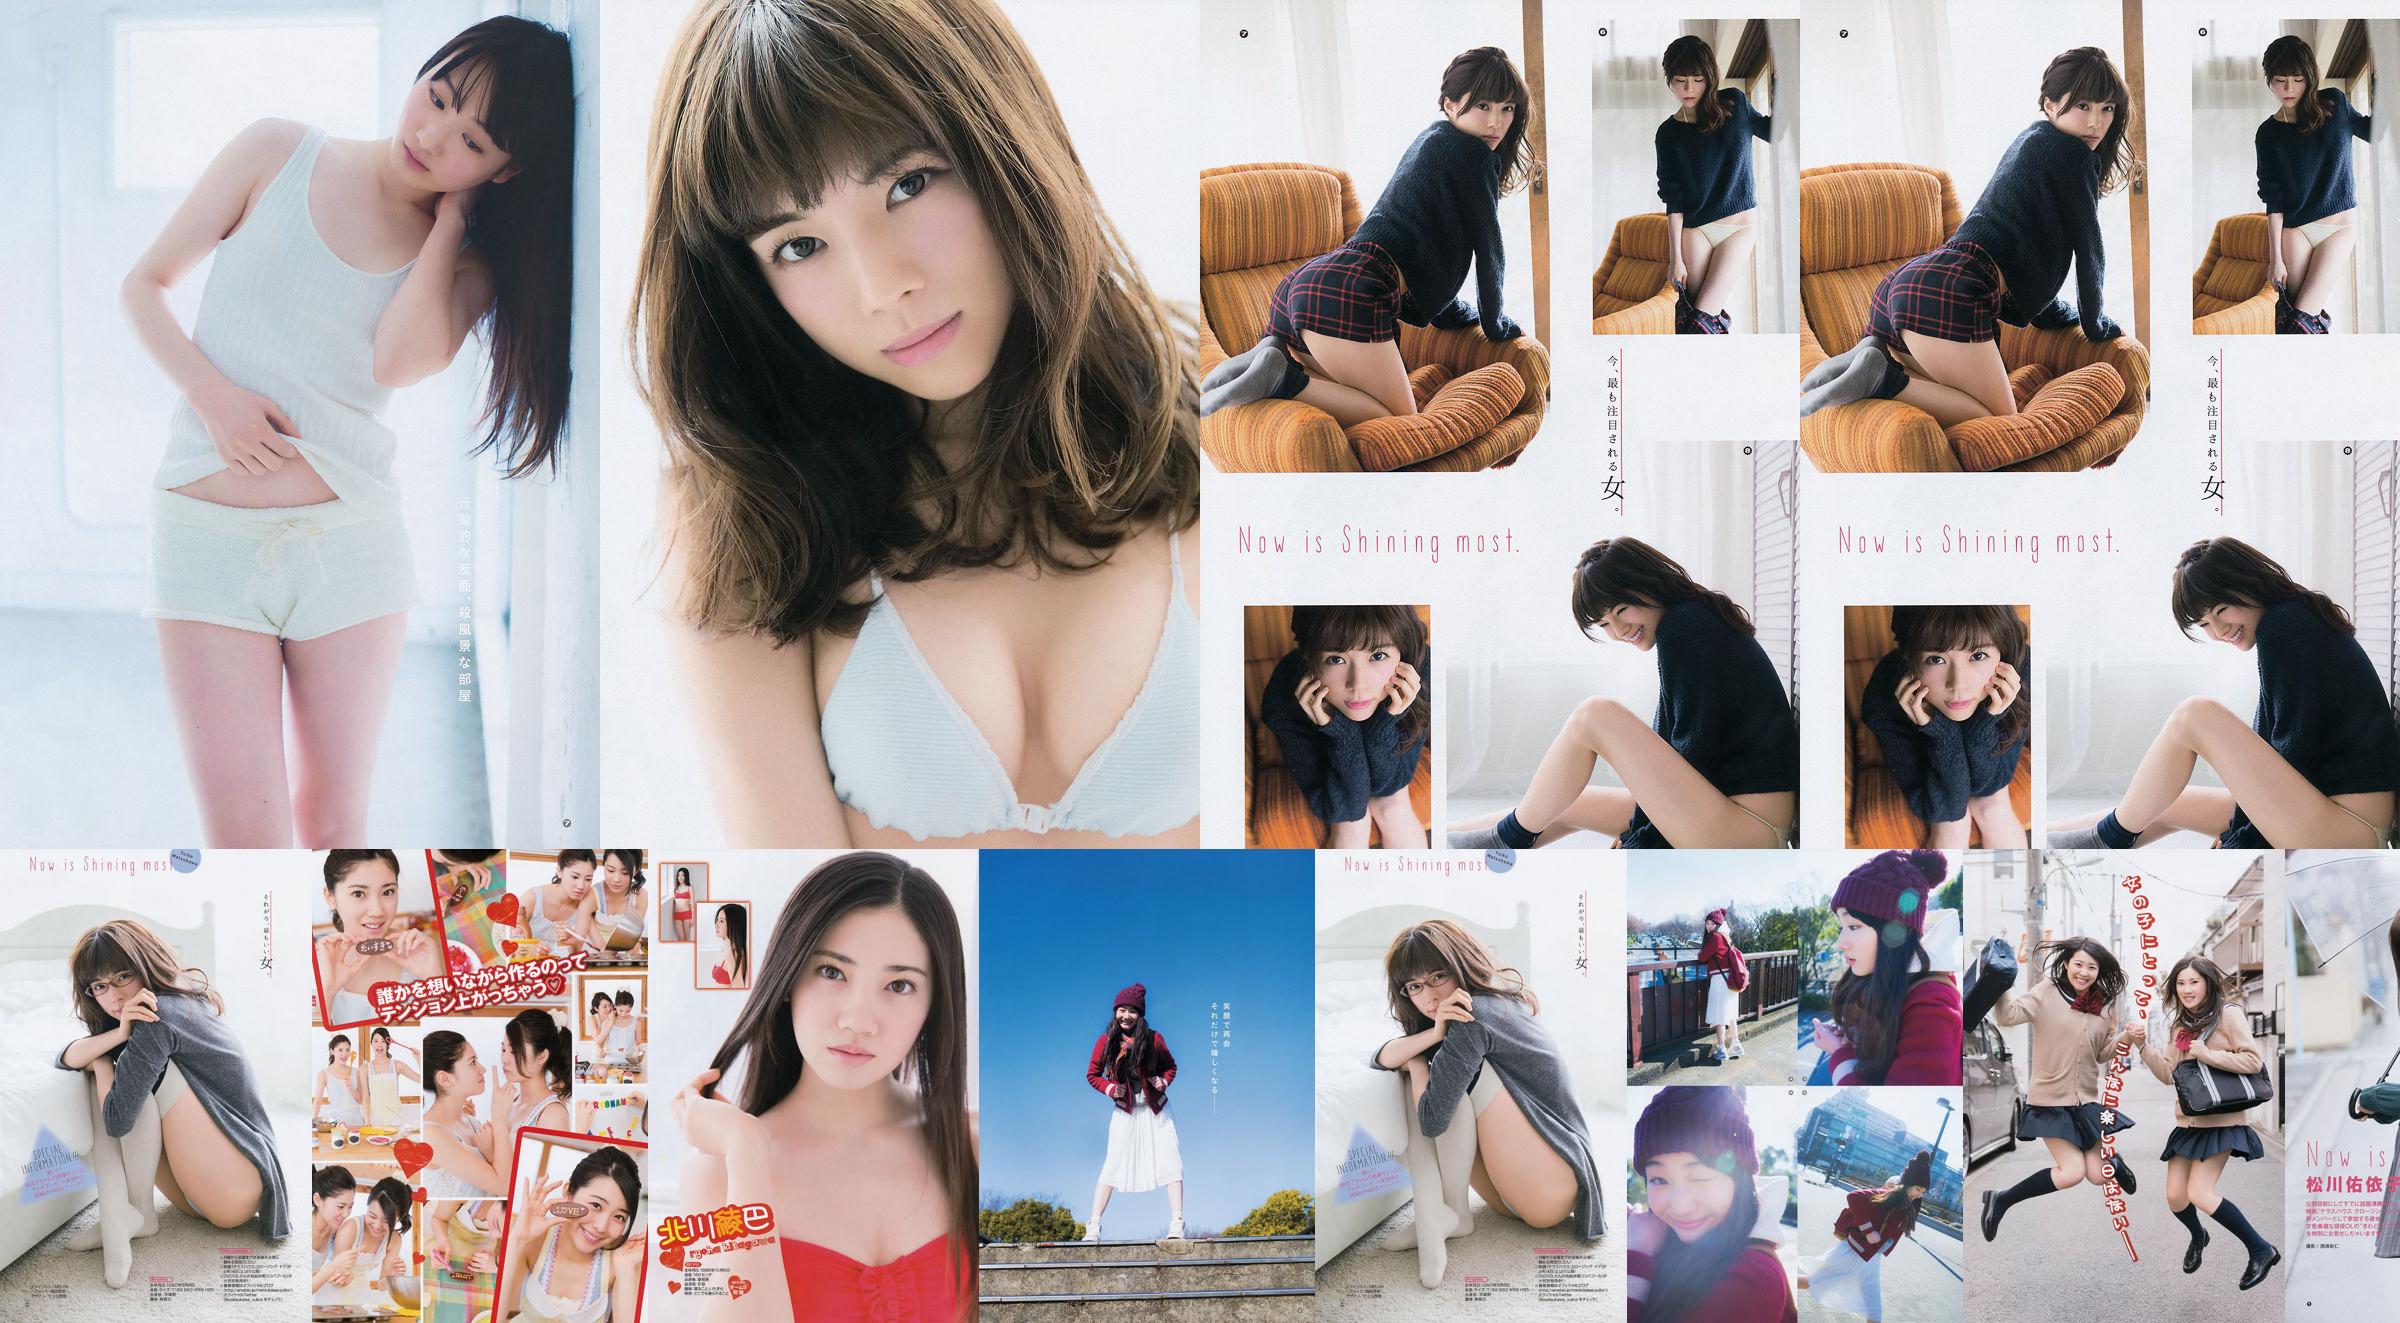 [Young Gangan] Ryoha Kitagawa Ami Miyamae Yuiko Matsukawa Narumi Akizuki 2015 No.04 Photograph No.cf3f40 Page 1